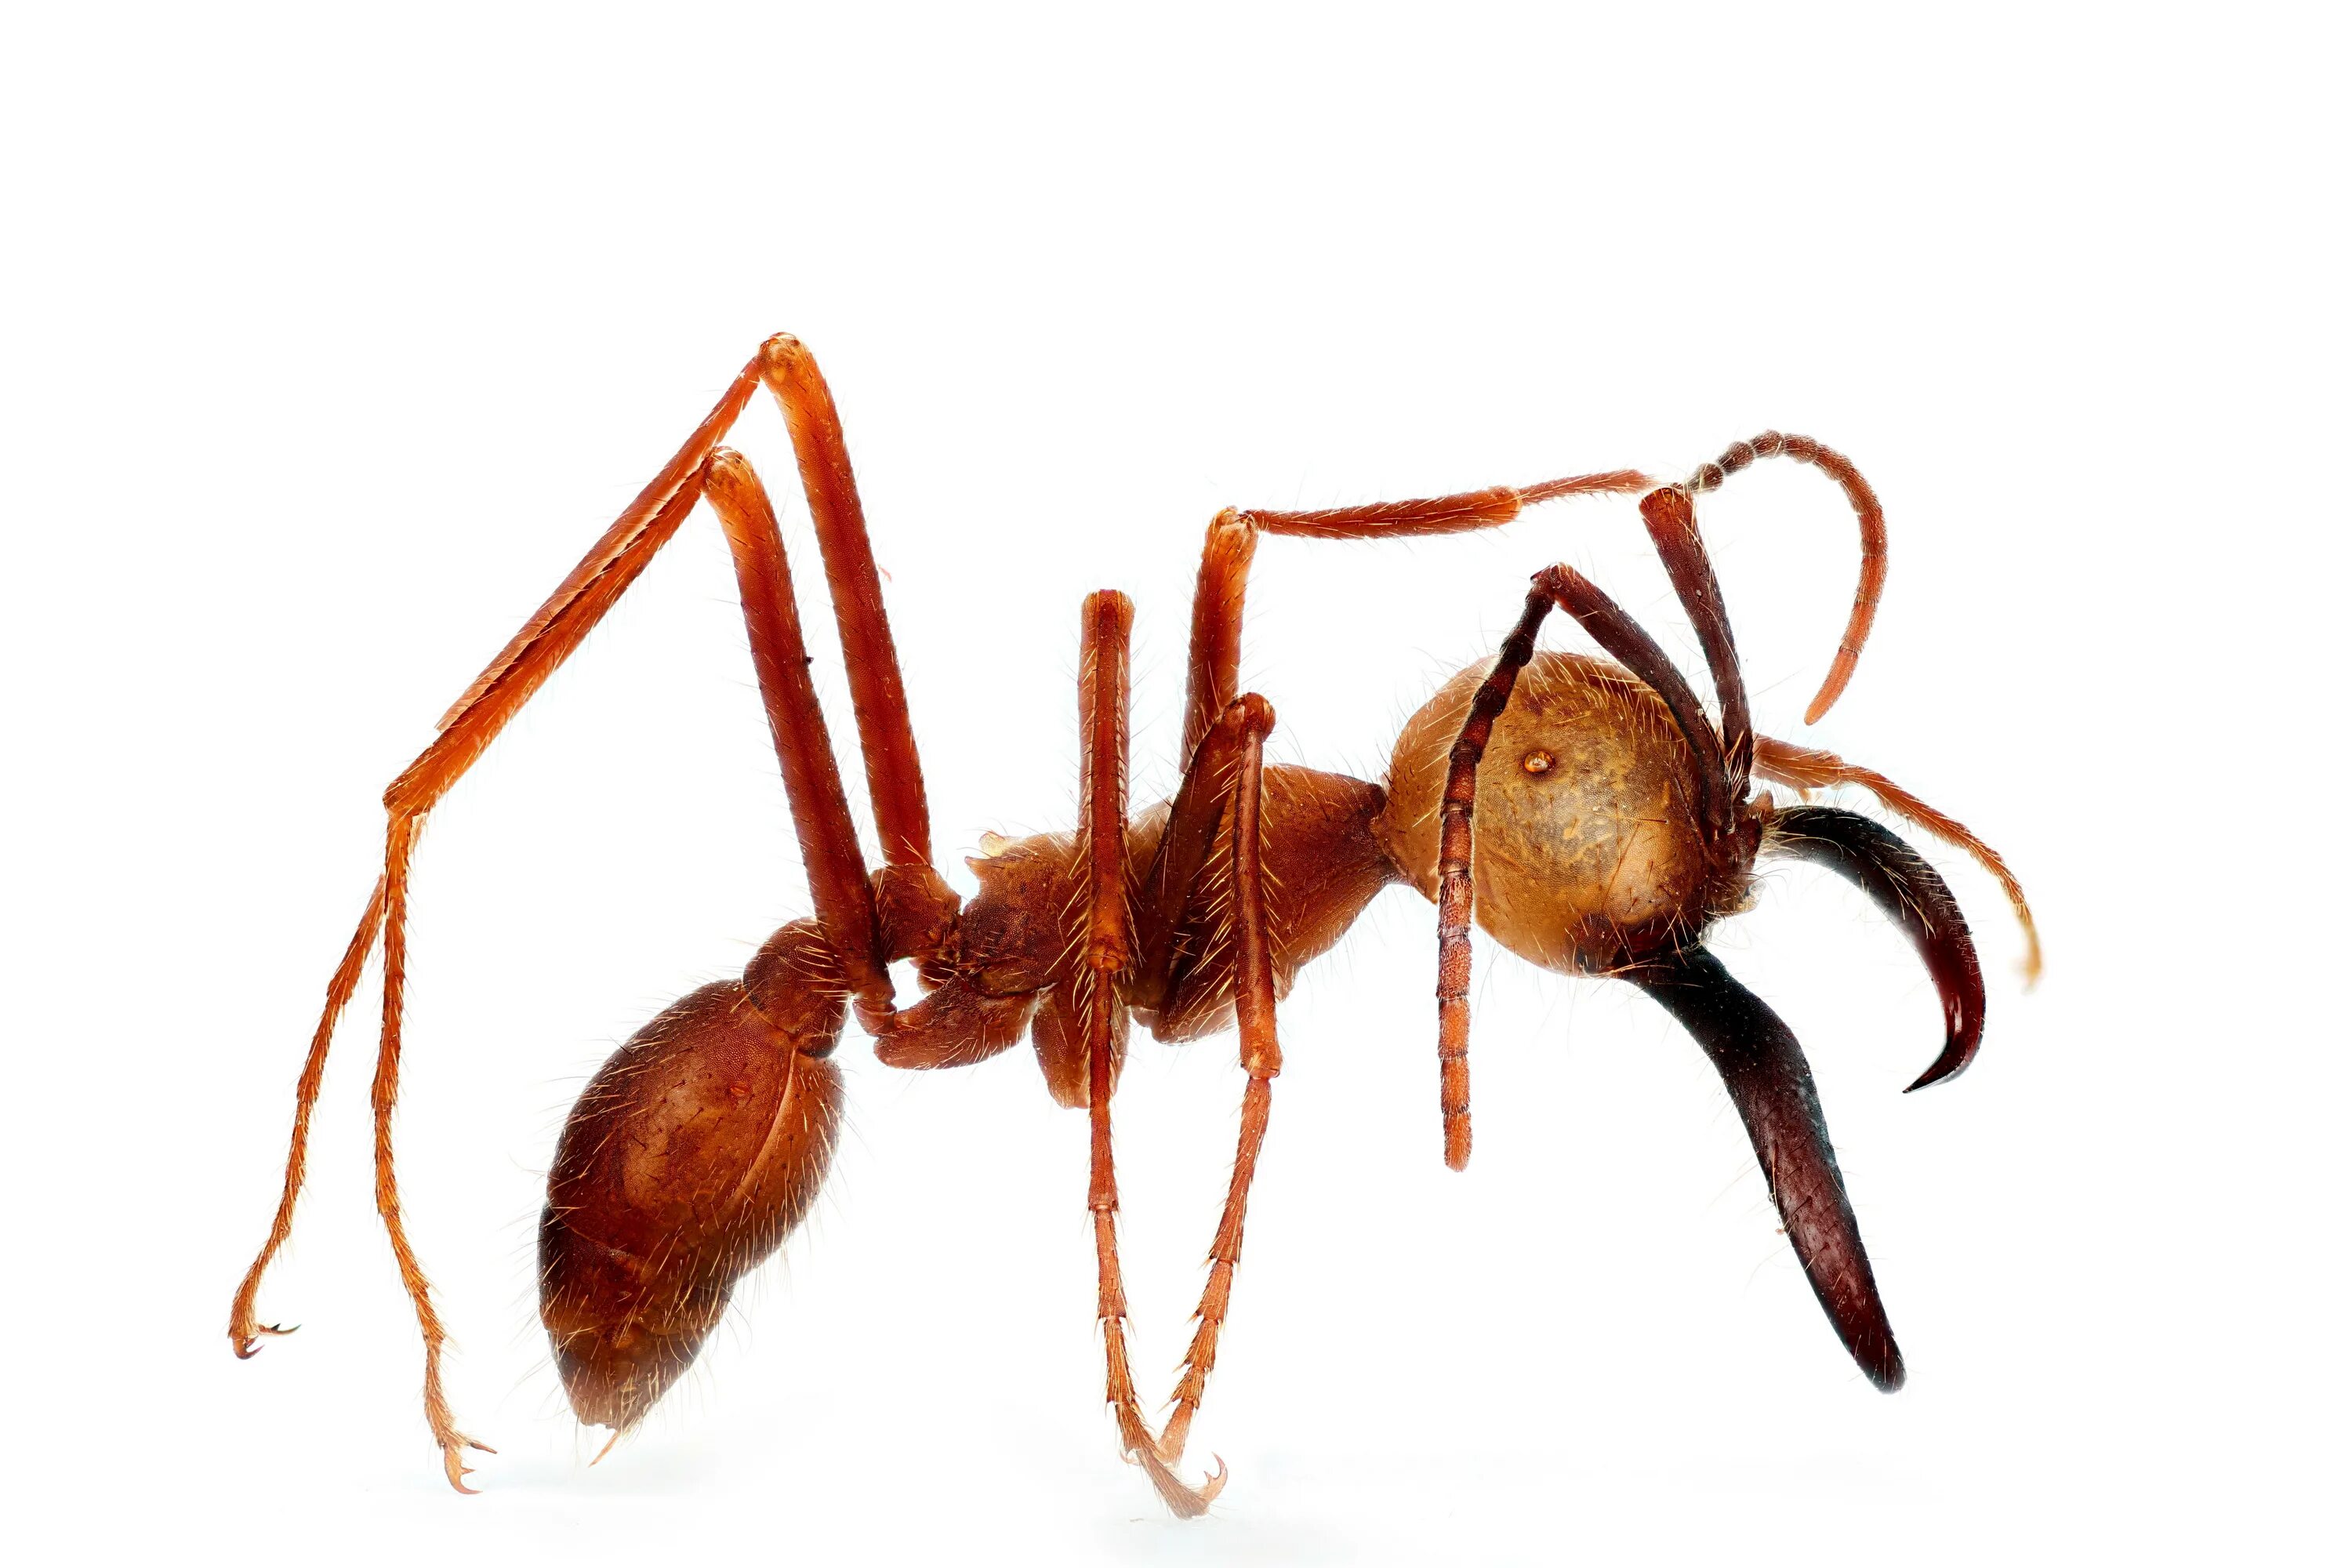 Название армейского муравья. Эцитоны Бурчелли. Муравьи Эцитоны. Титаномирма муравей. Армейские муравьи-солдаты (Eciton burchellii).